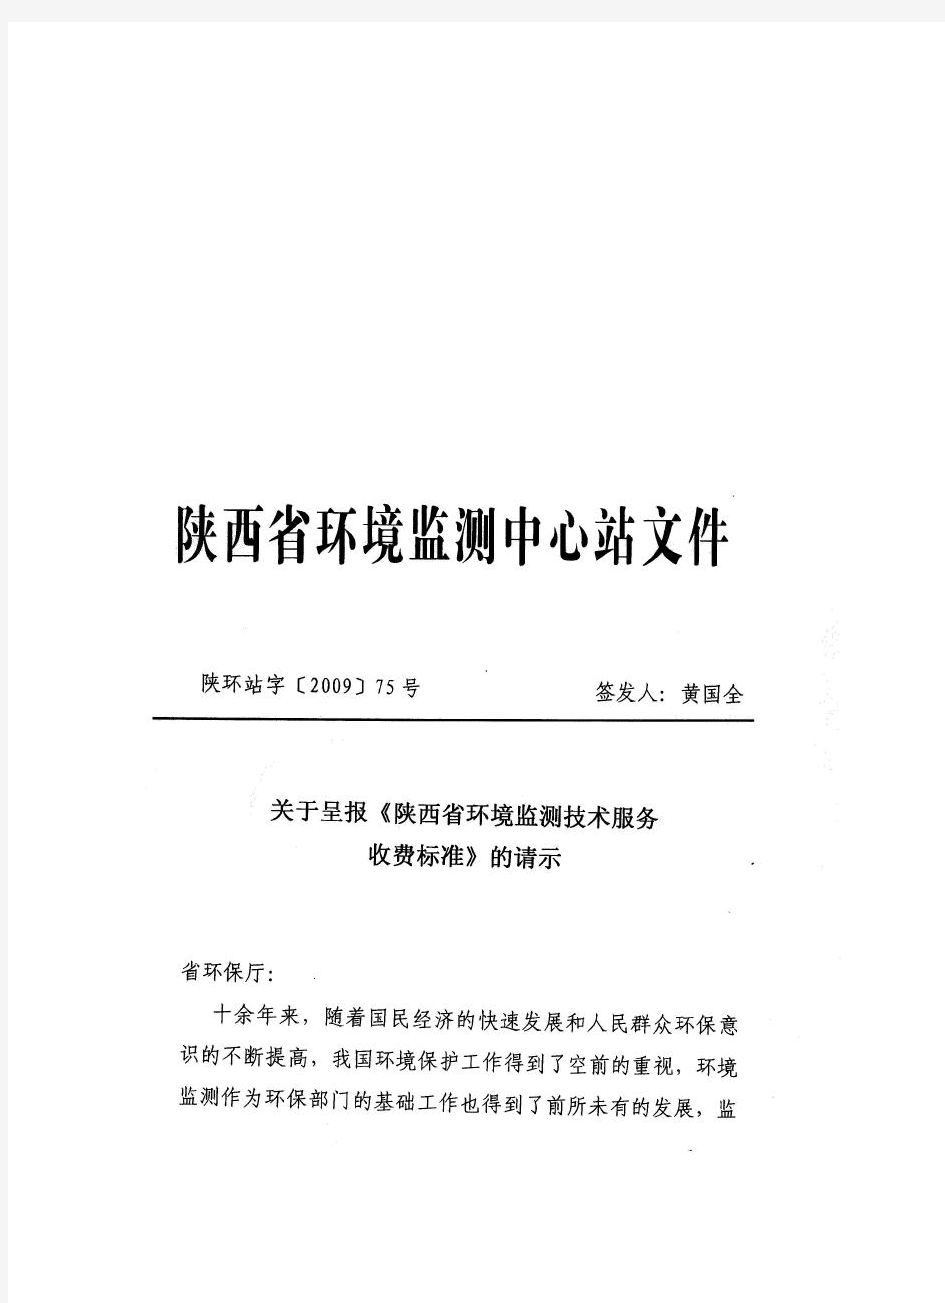 陕西省环境监测收费标准陕环字(2009)75号